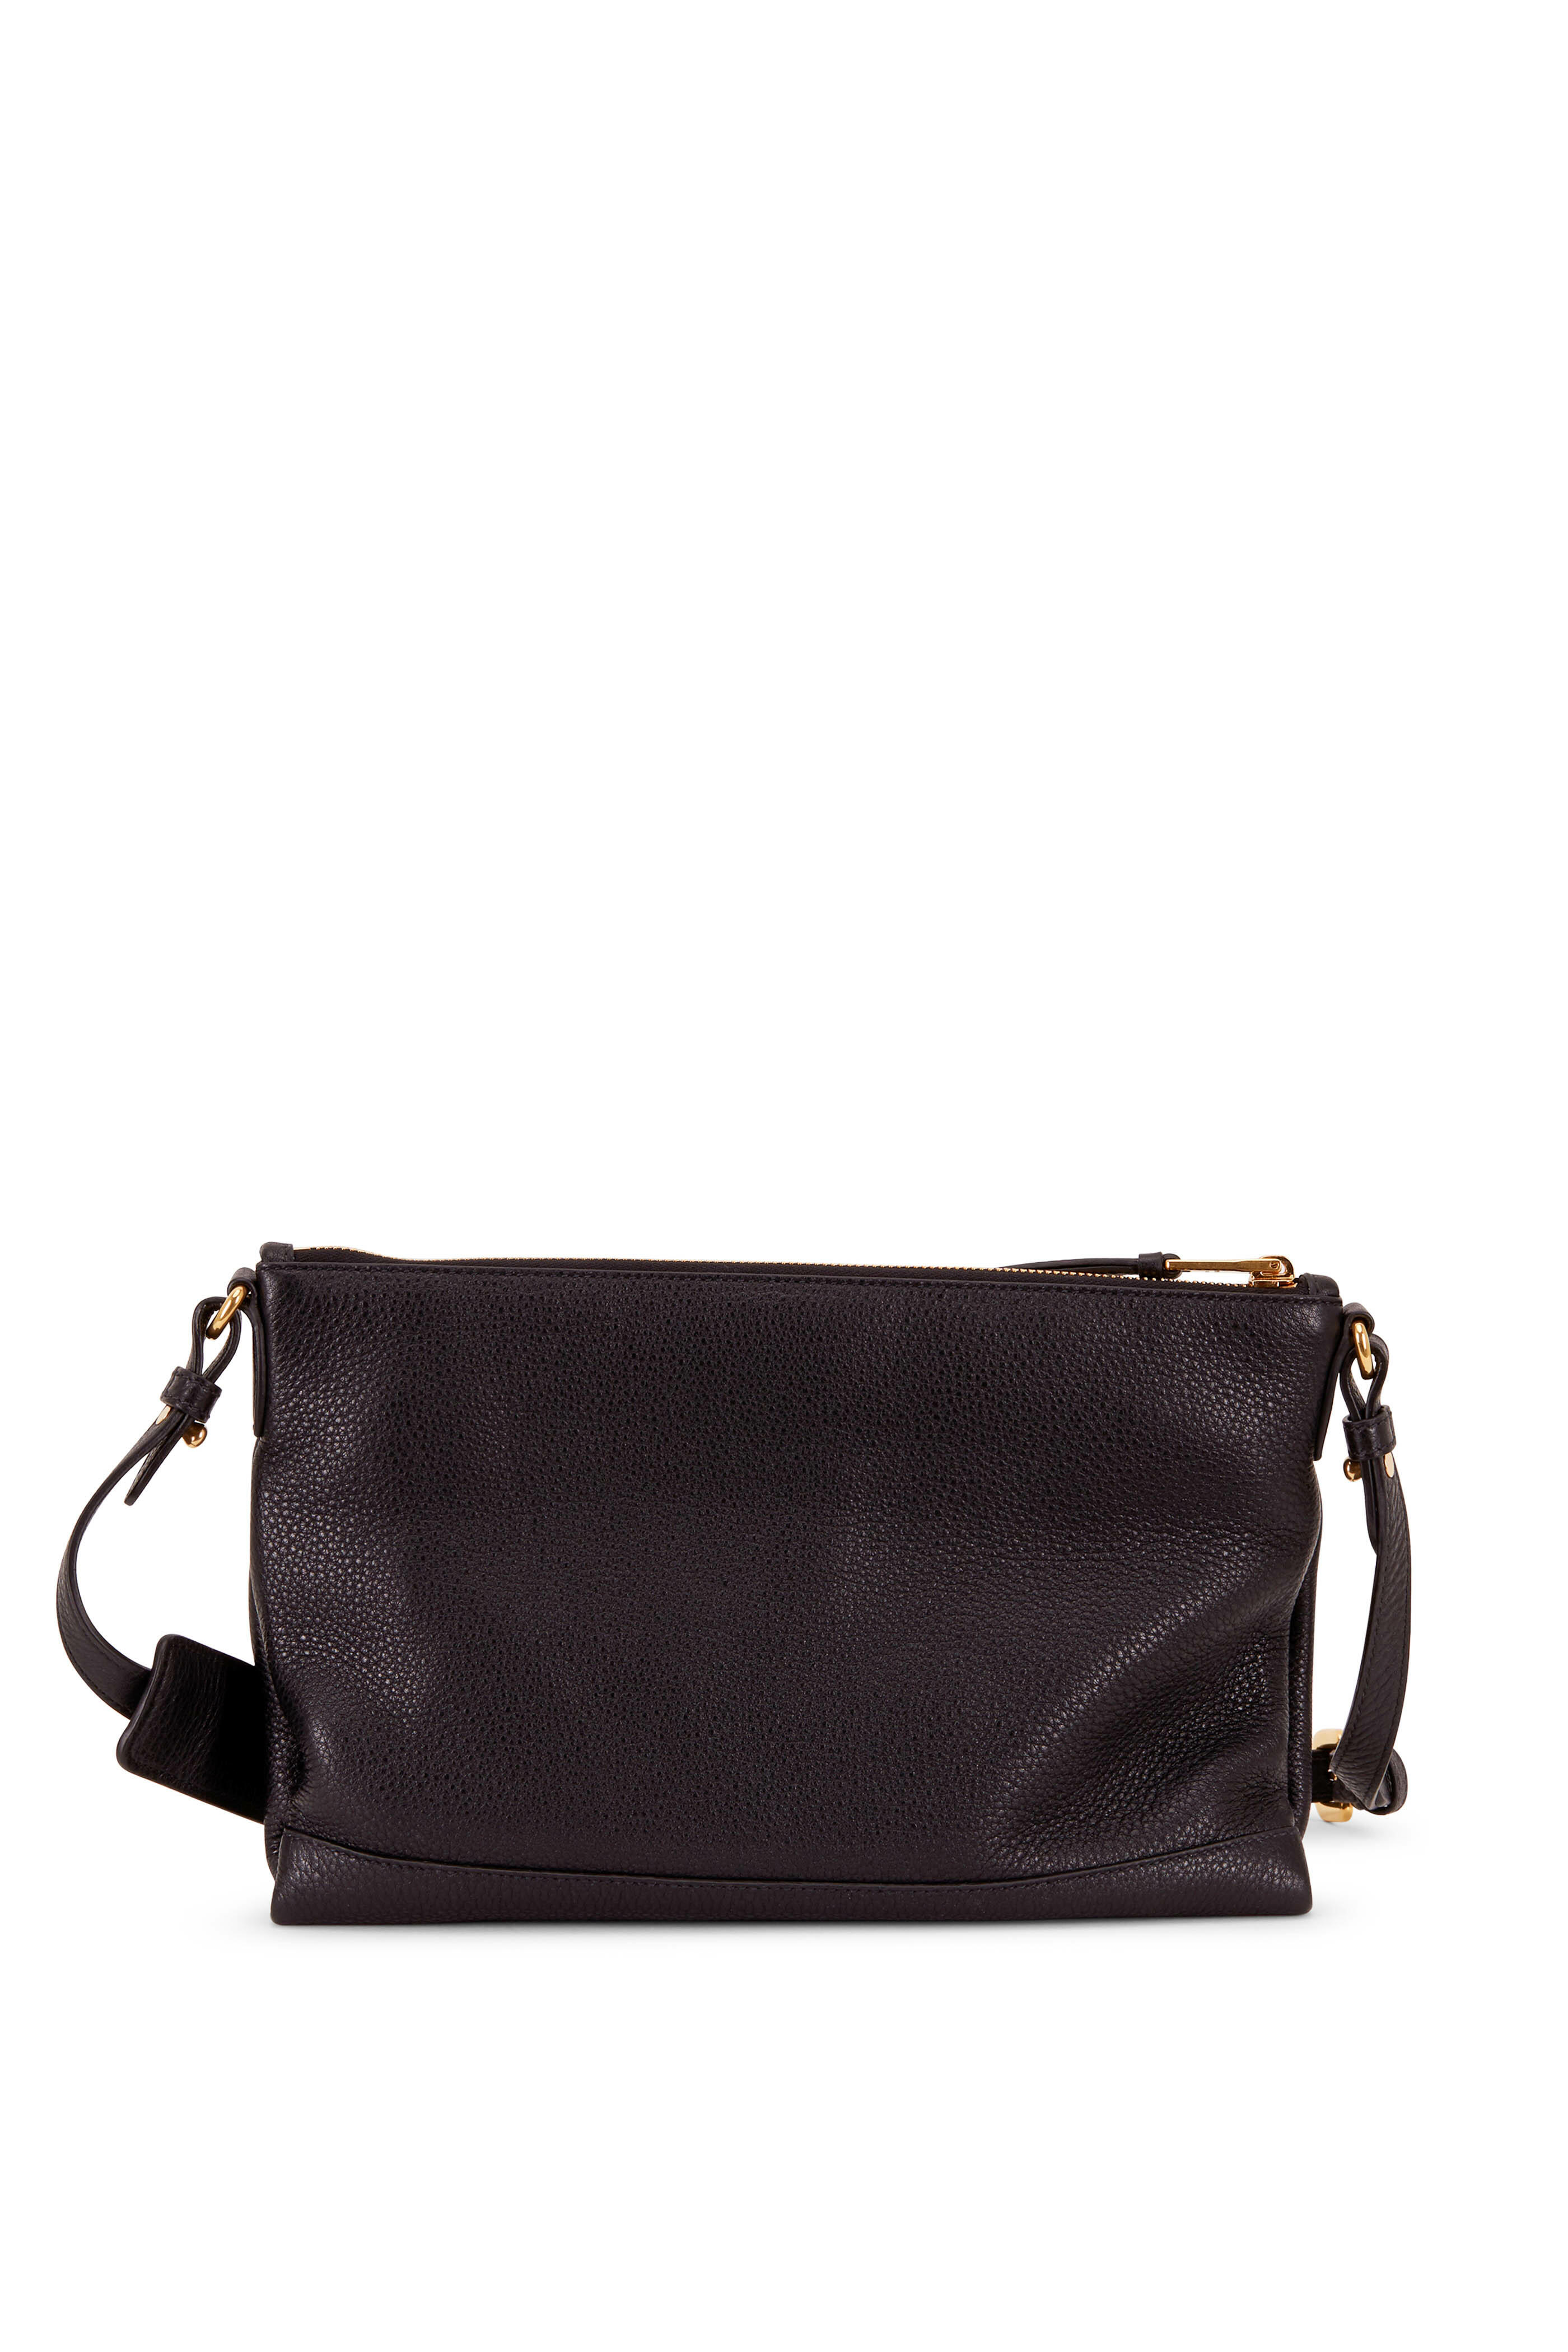 Thoughts on YSL Gaby Micro bag? : r/handbags